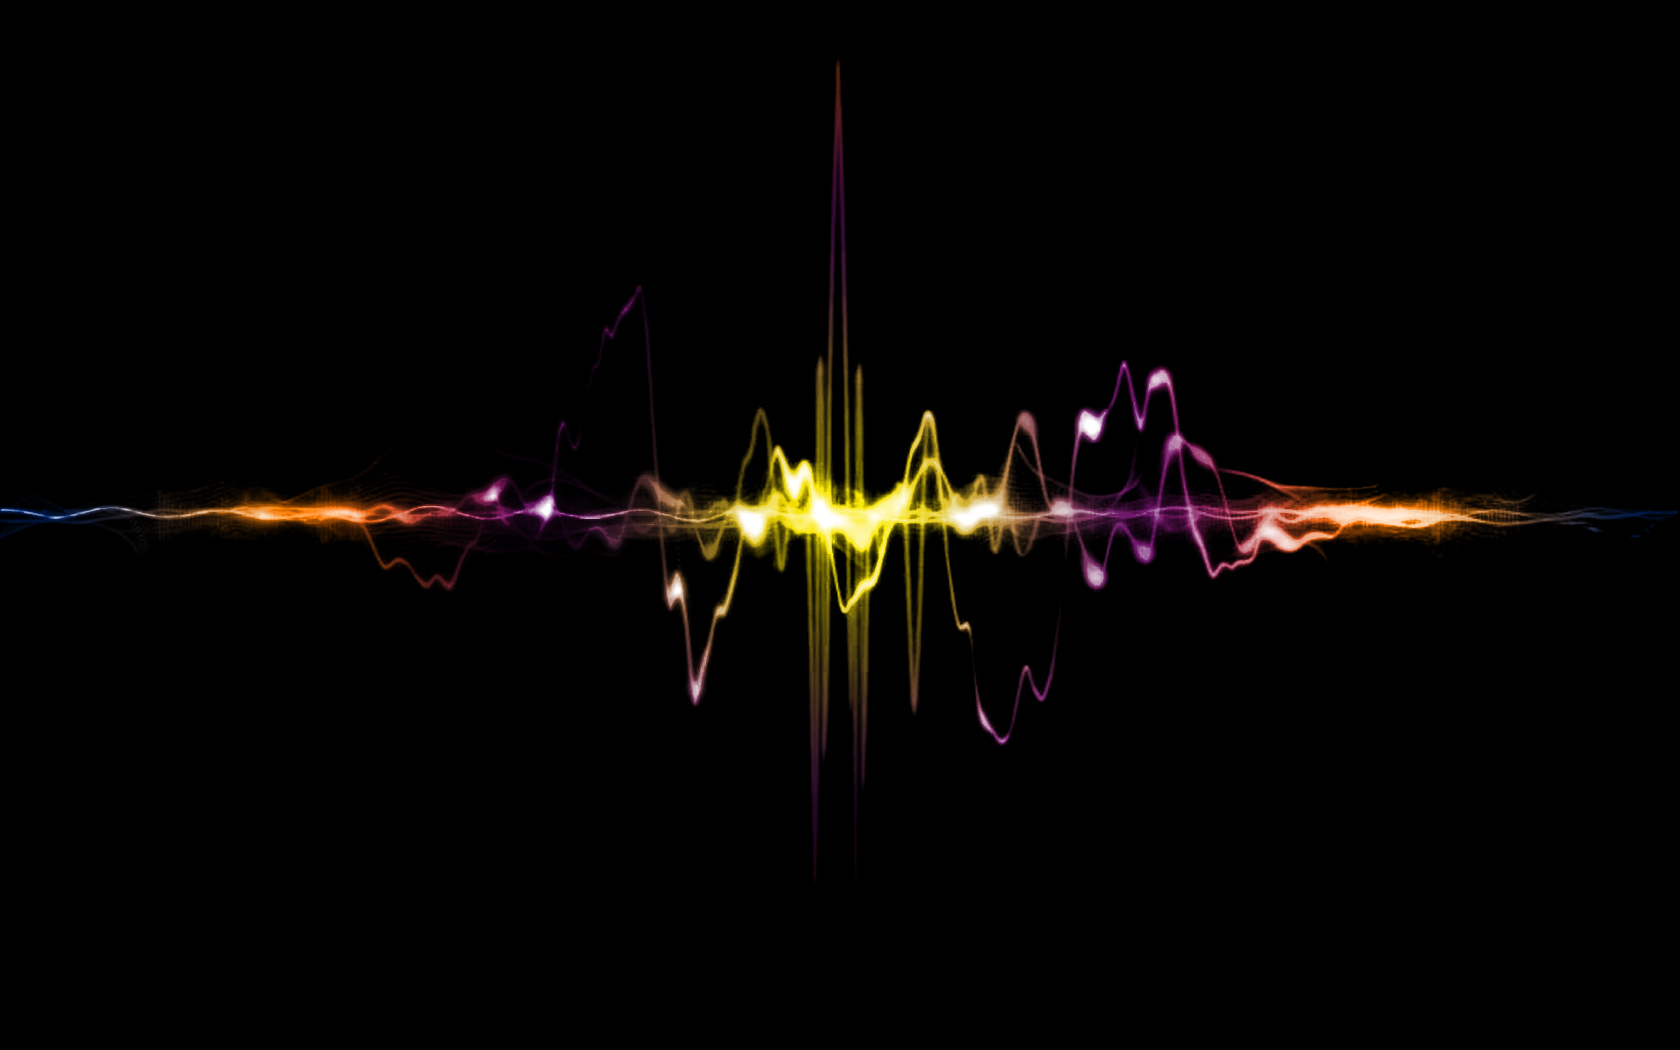 soundwave slide background